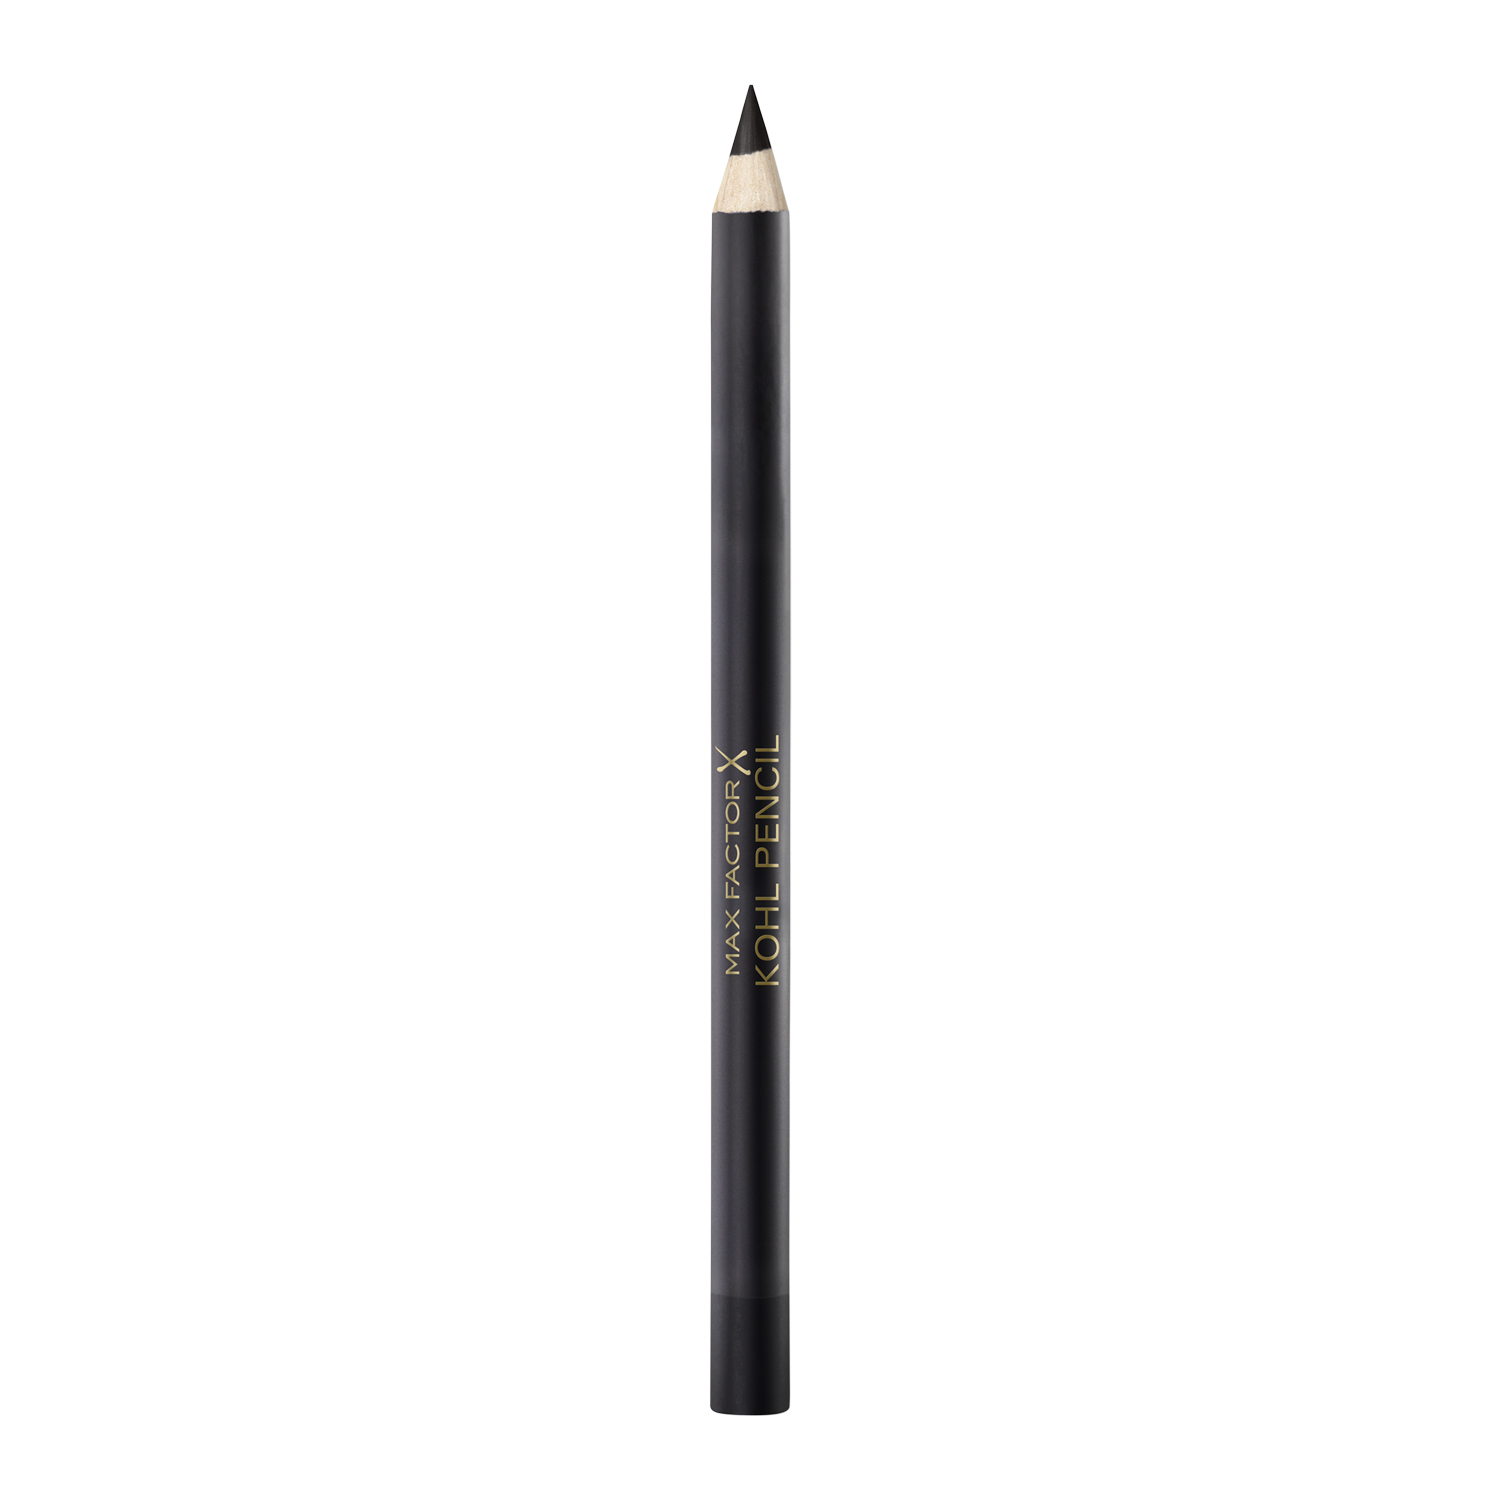 Олівець для очей Max Factor Kohl Pencil, відтінок 20 (Black), 1,2 г (8000008745750) - фото 1